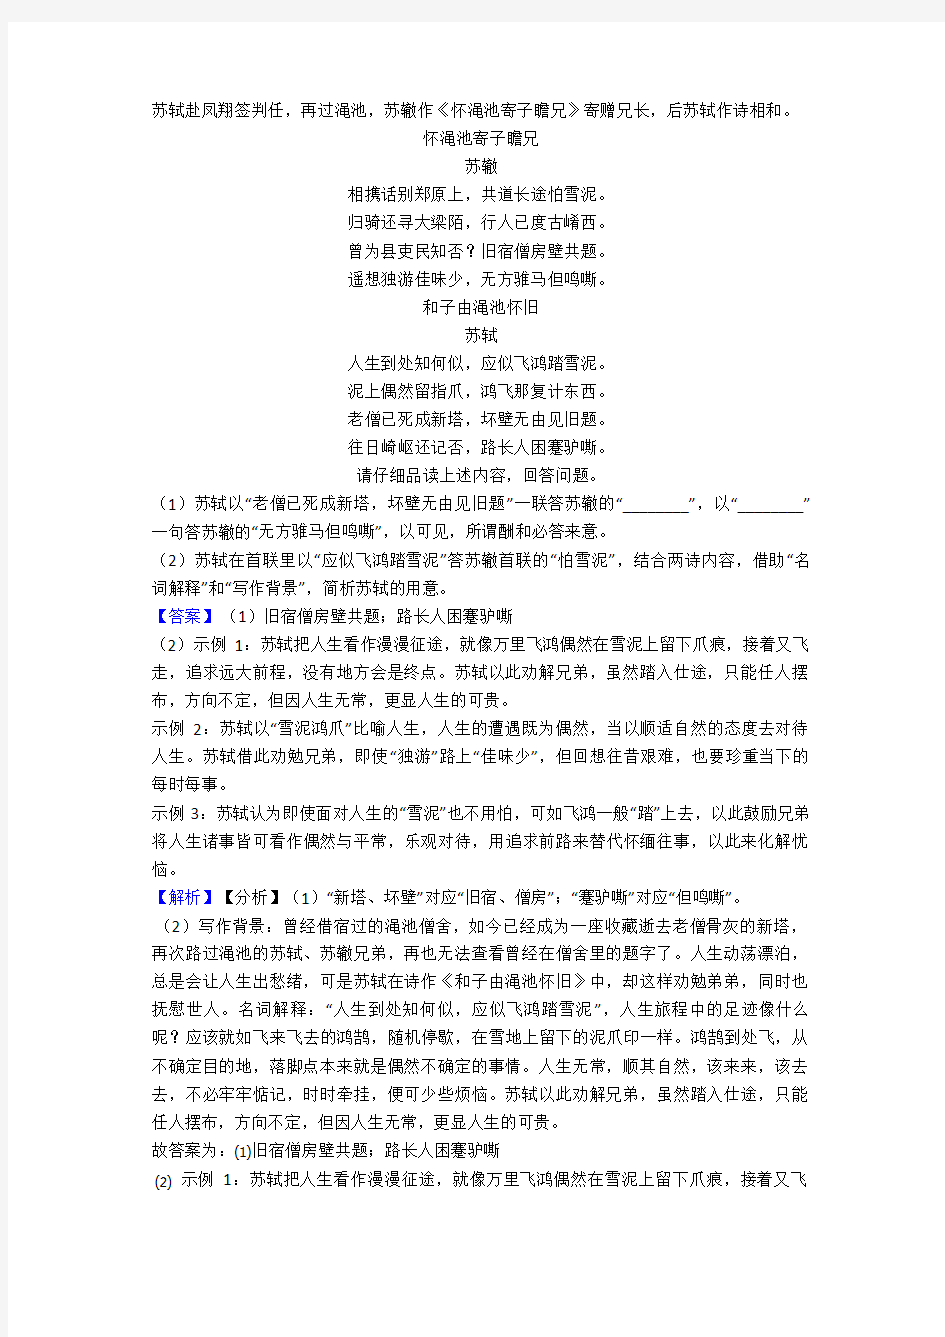 初中语文诗歌鉴赏+文言文阅读常见题型及答题技巧及练习题(含答案) (15)